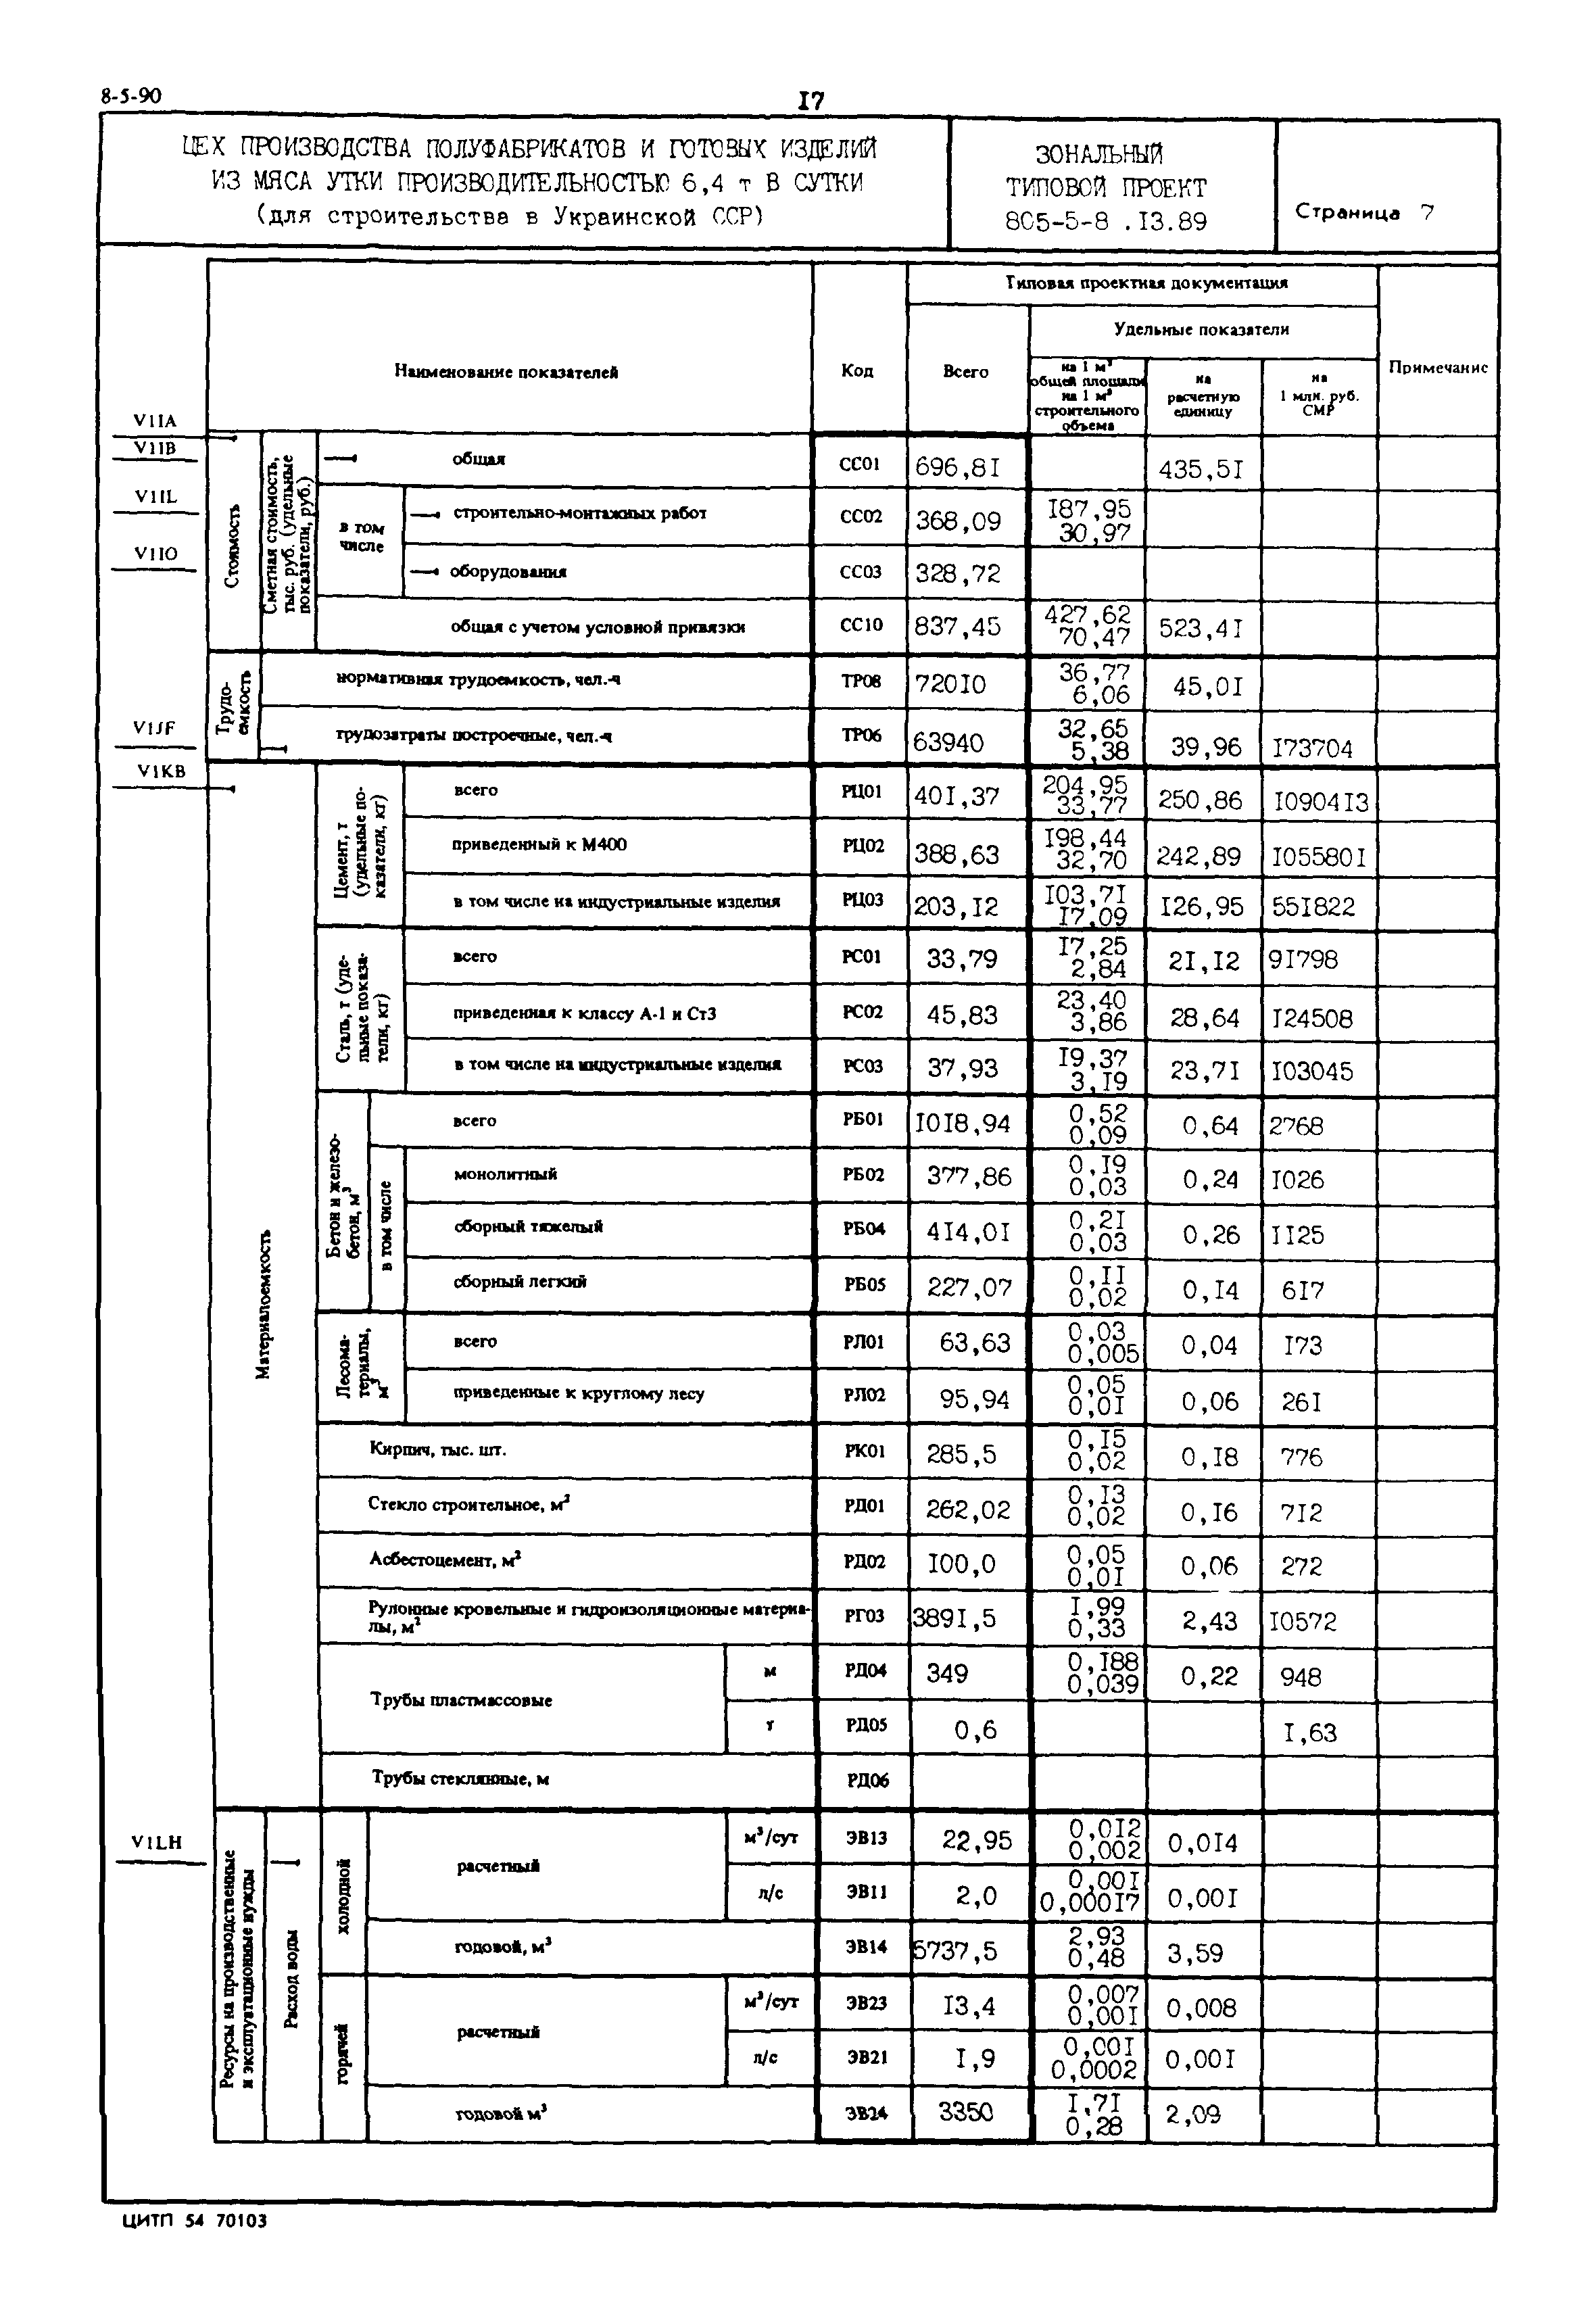 Типовой проект 805-5-8.13.89